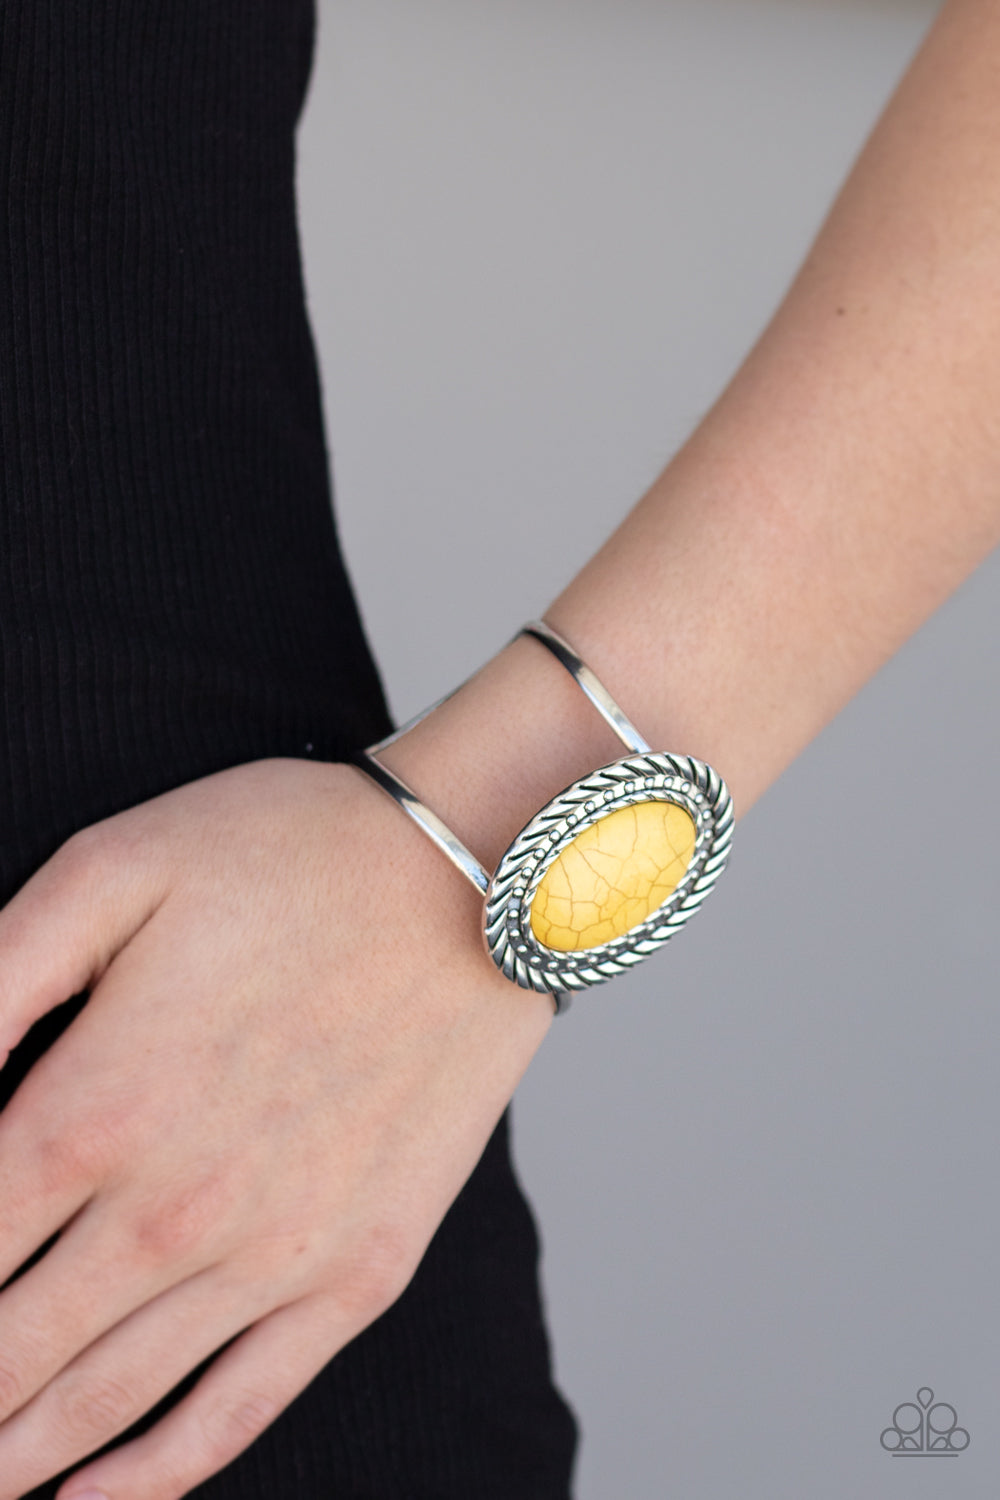 Paparazzi Desert Aura - Yellow Stone - Silver Cuff Bracelet - $5 Jewelry with Ashley Swint